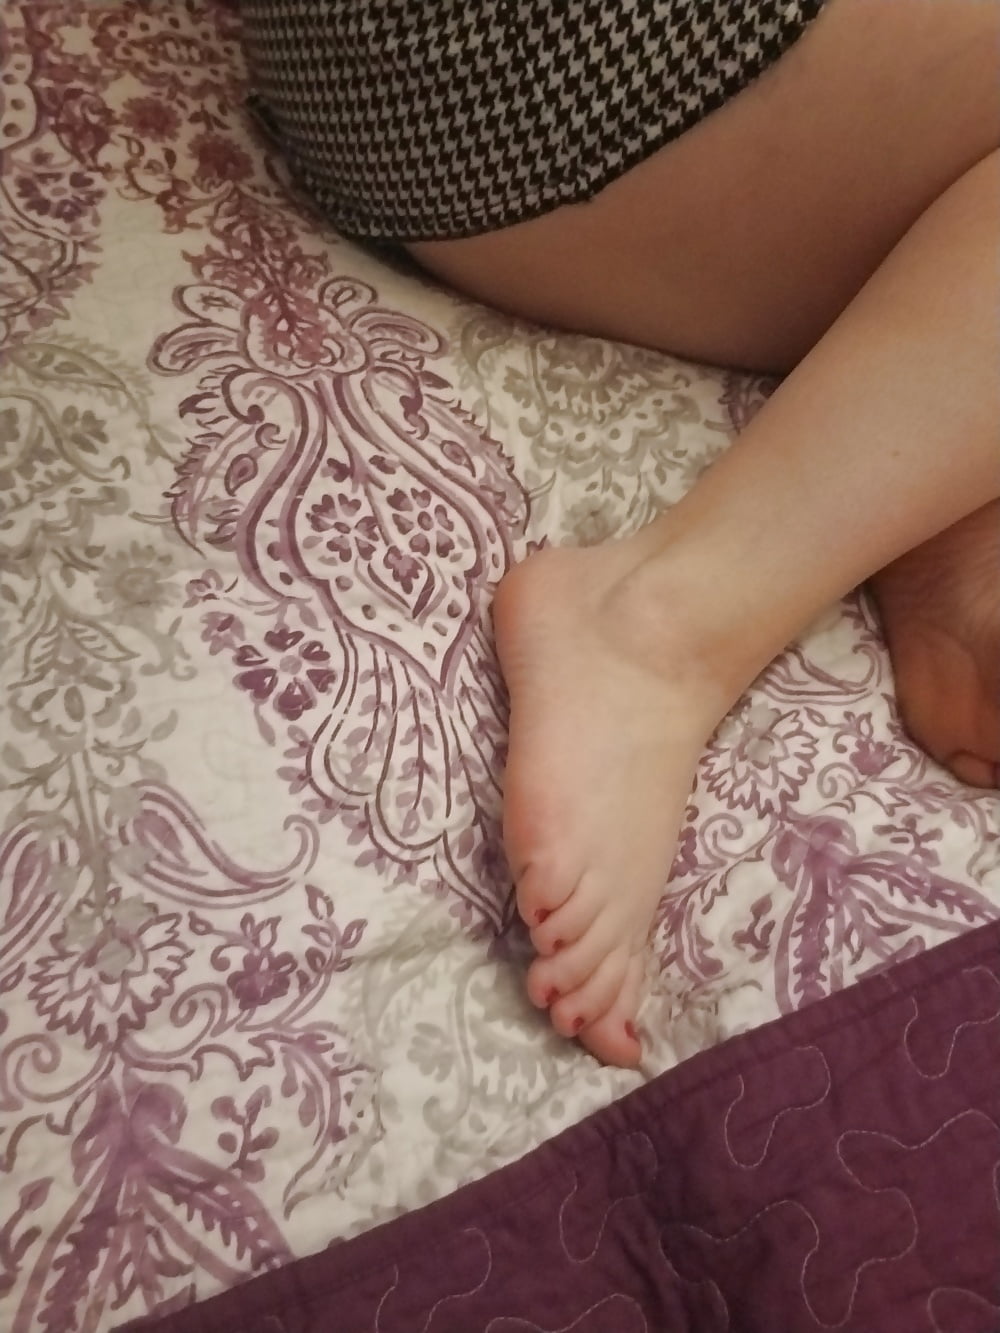 Piedi, gambe, tacchi e stivali della dolce casalinga sexy
 #106605623